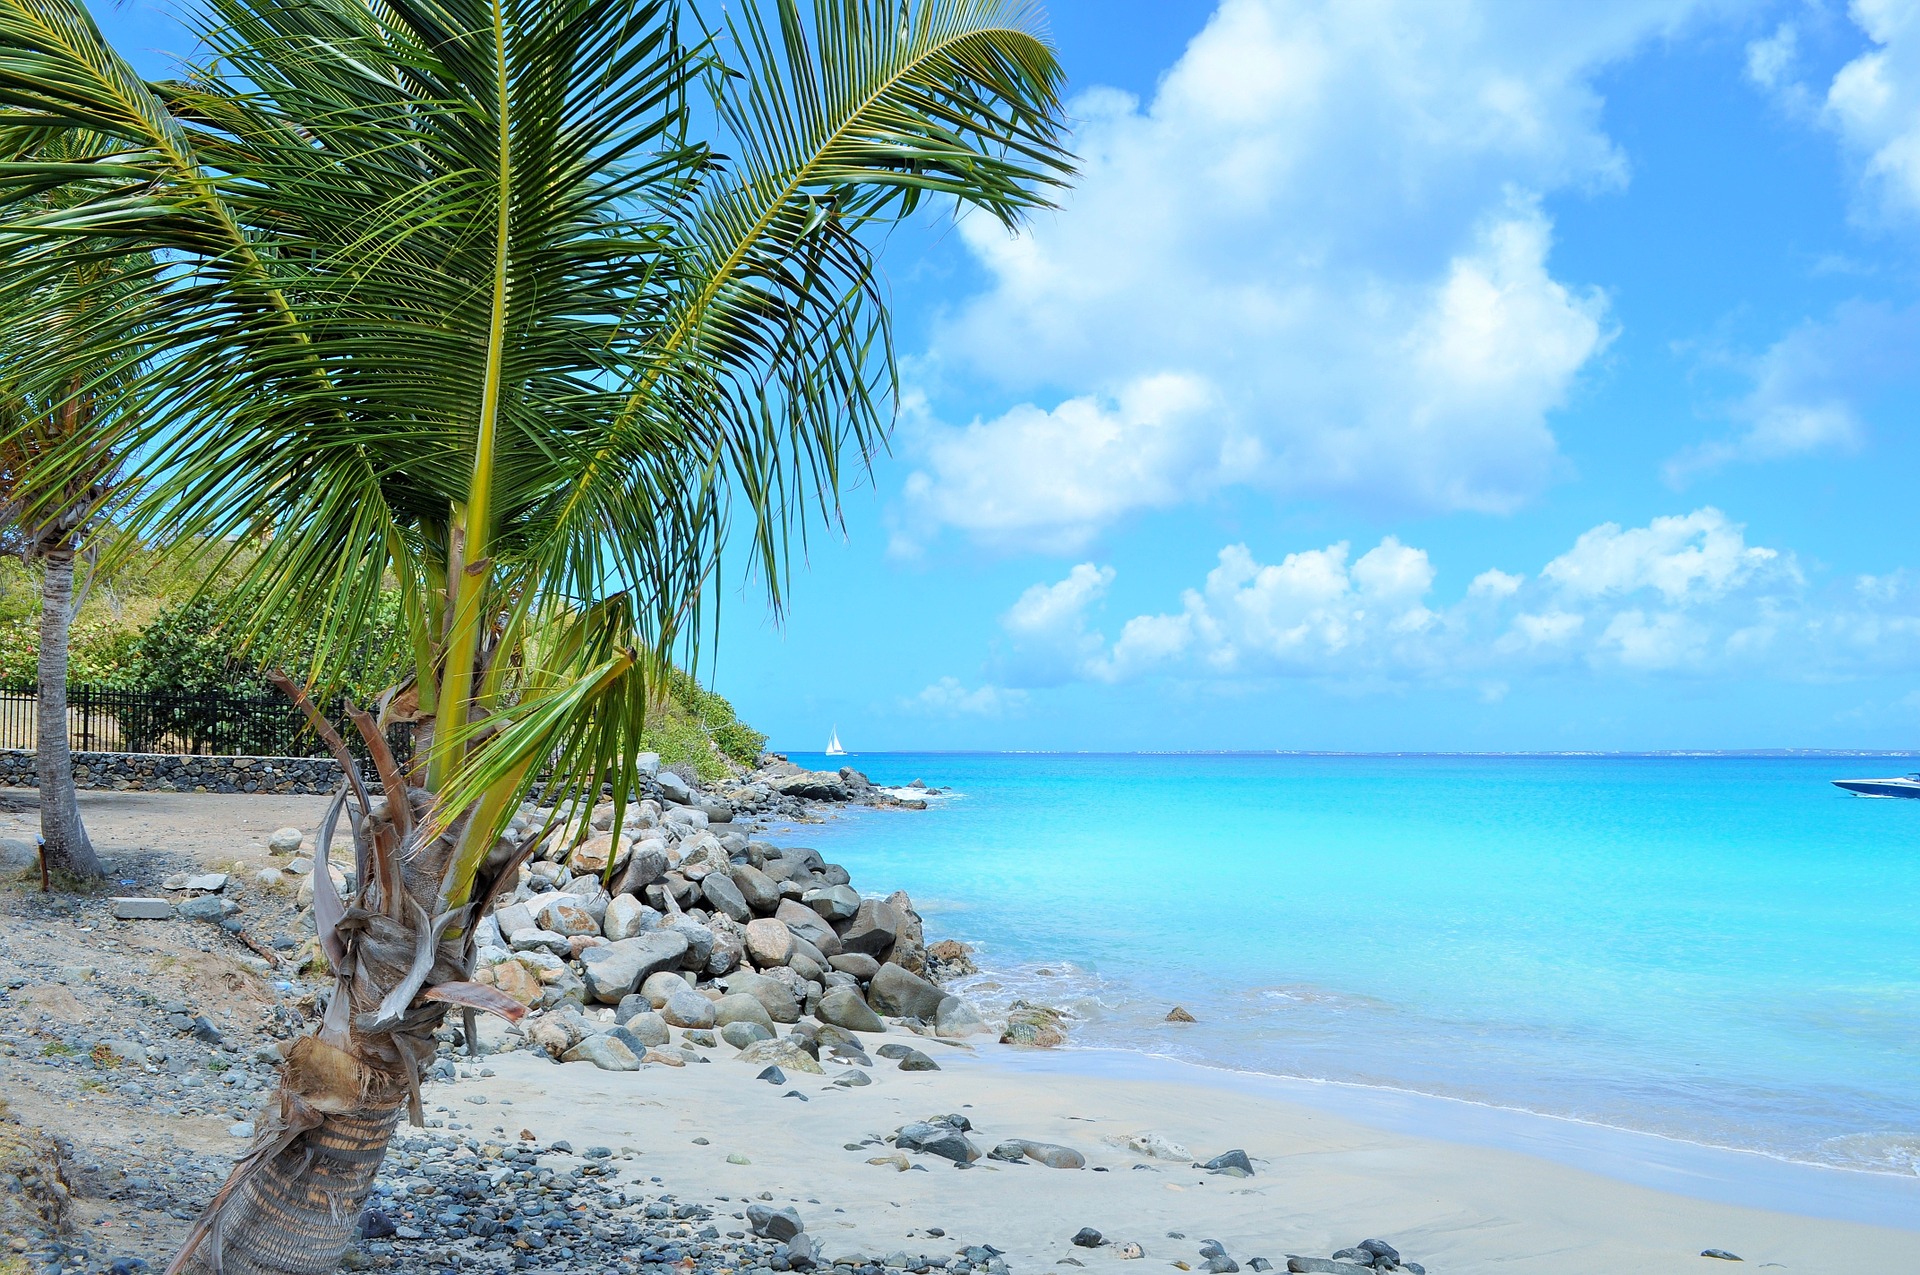 A lazy Sint Maarten beach - expat life